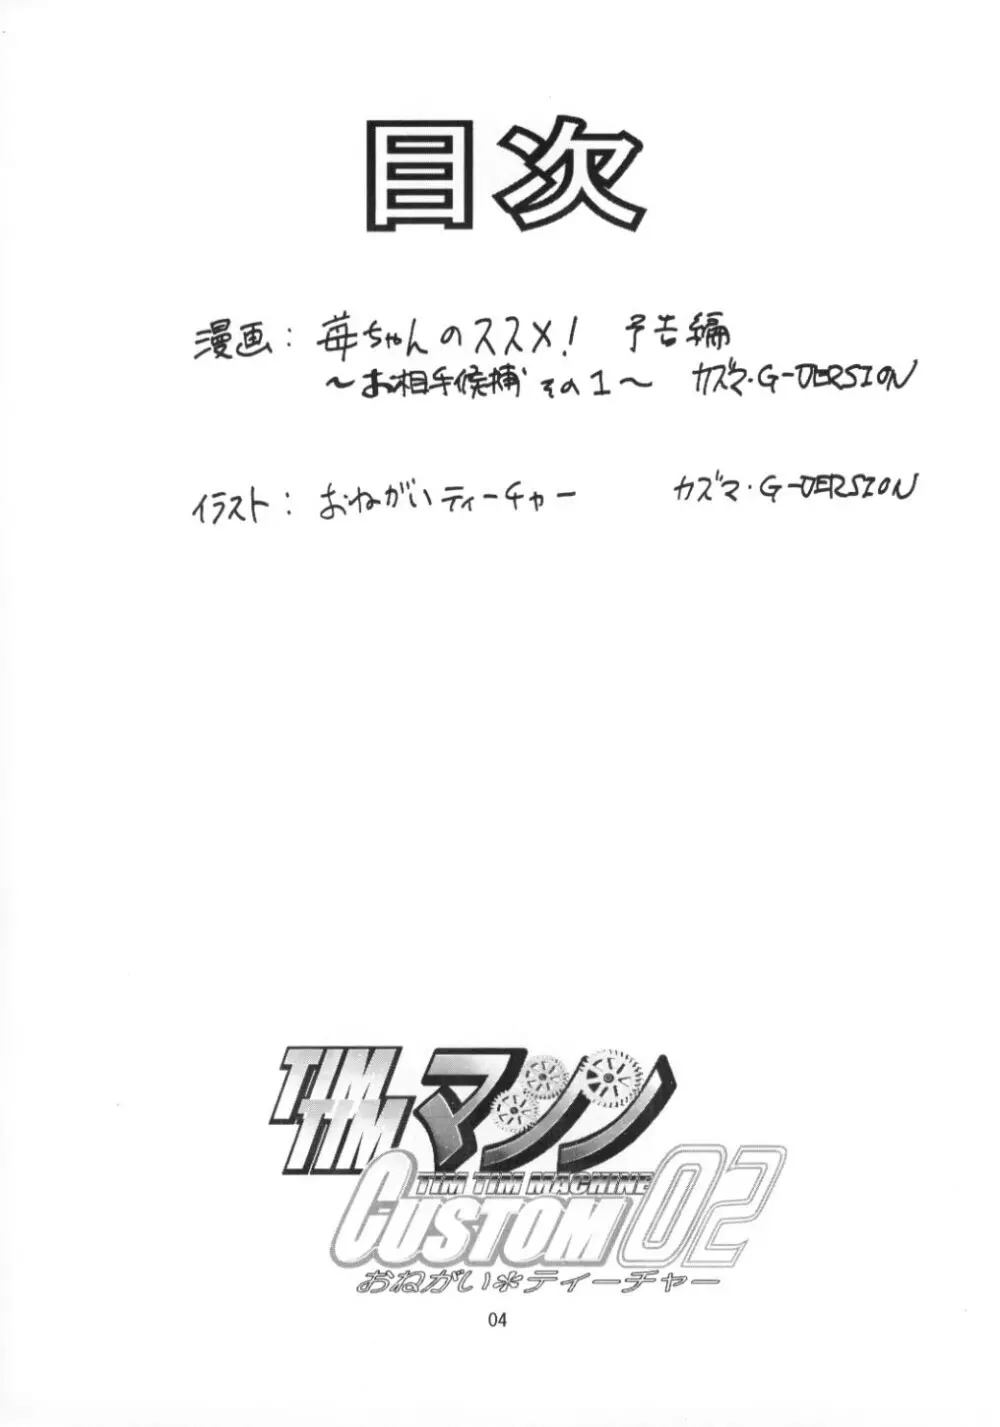 TIMTIMマシン CUSTOM 02 サマースペシャル 2002 - page3